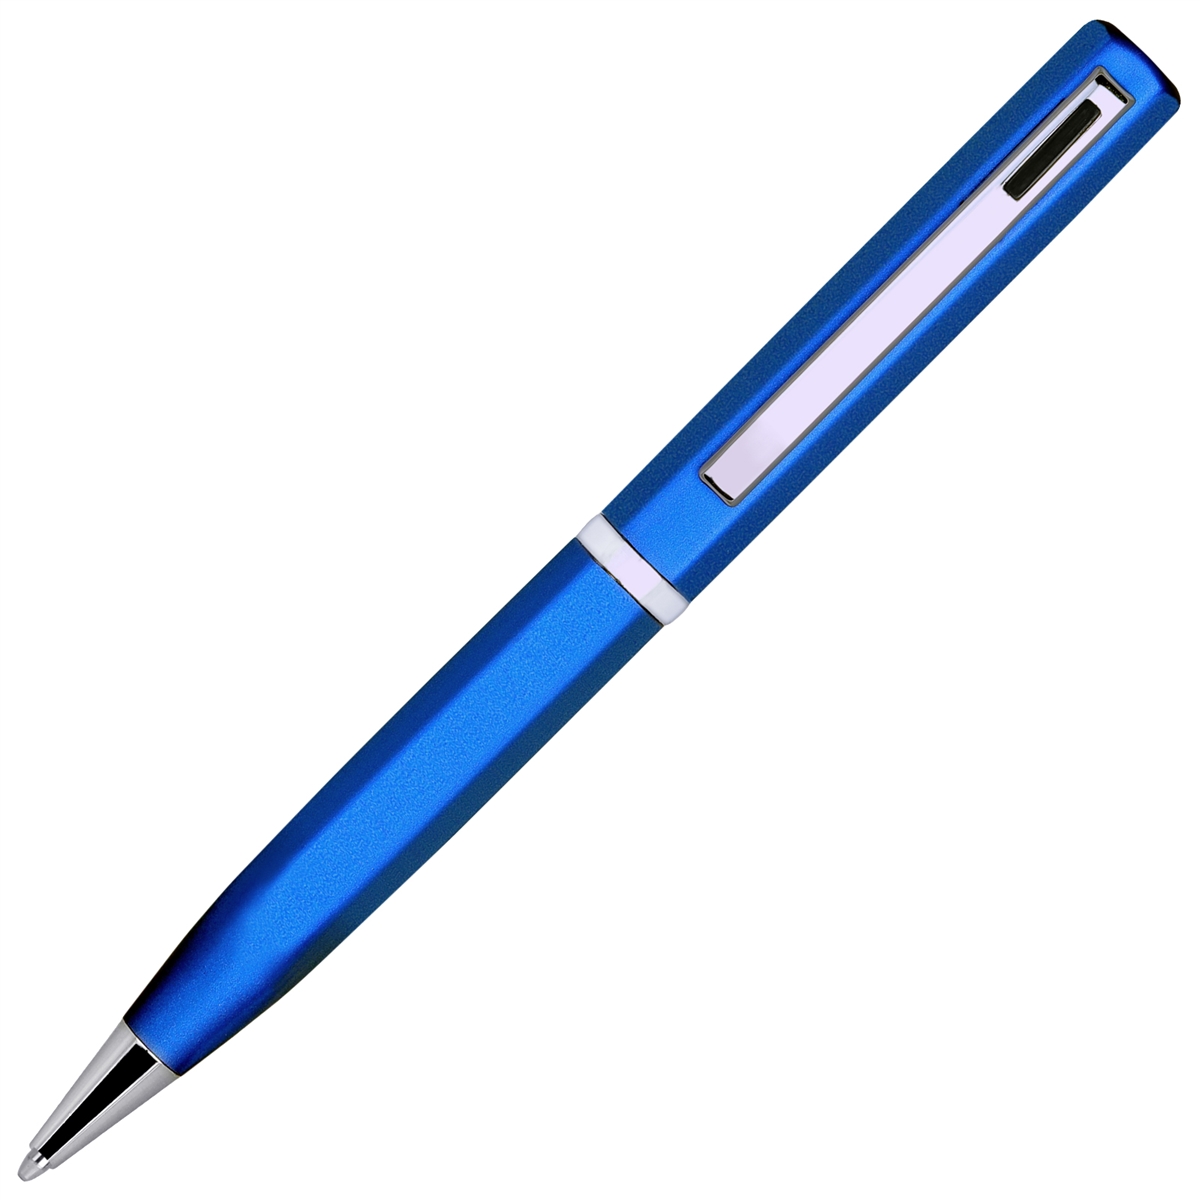 Elica Ball Pen – Blue